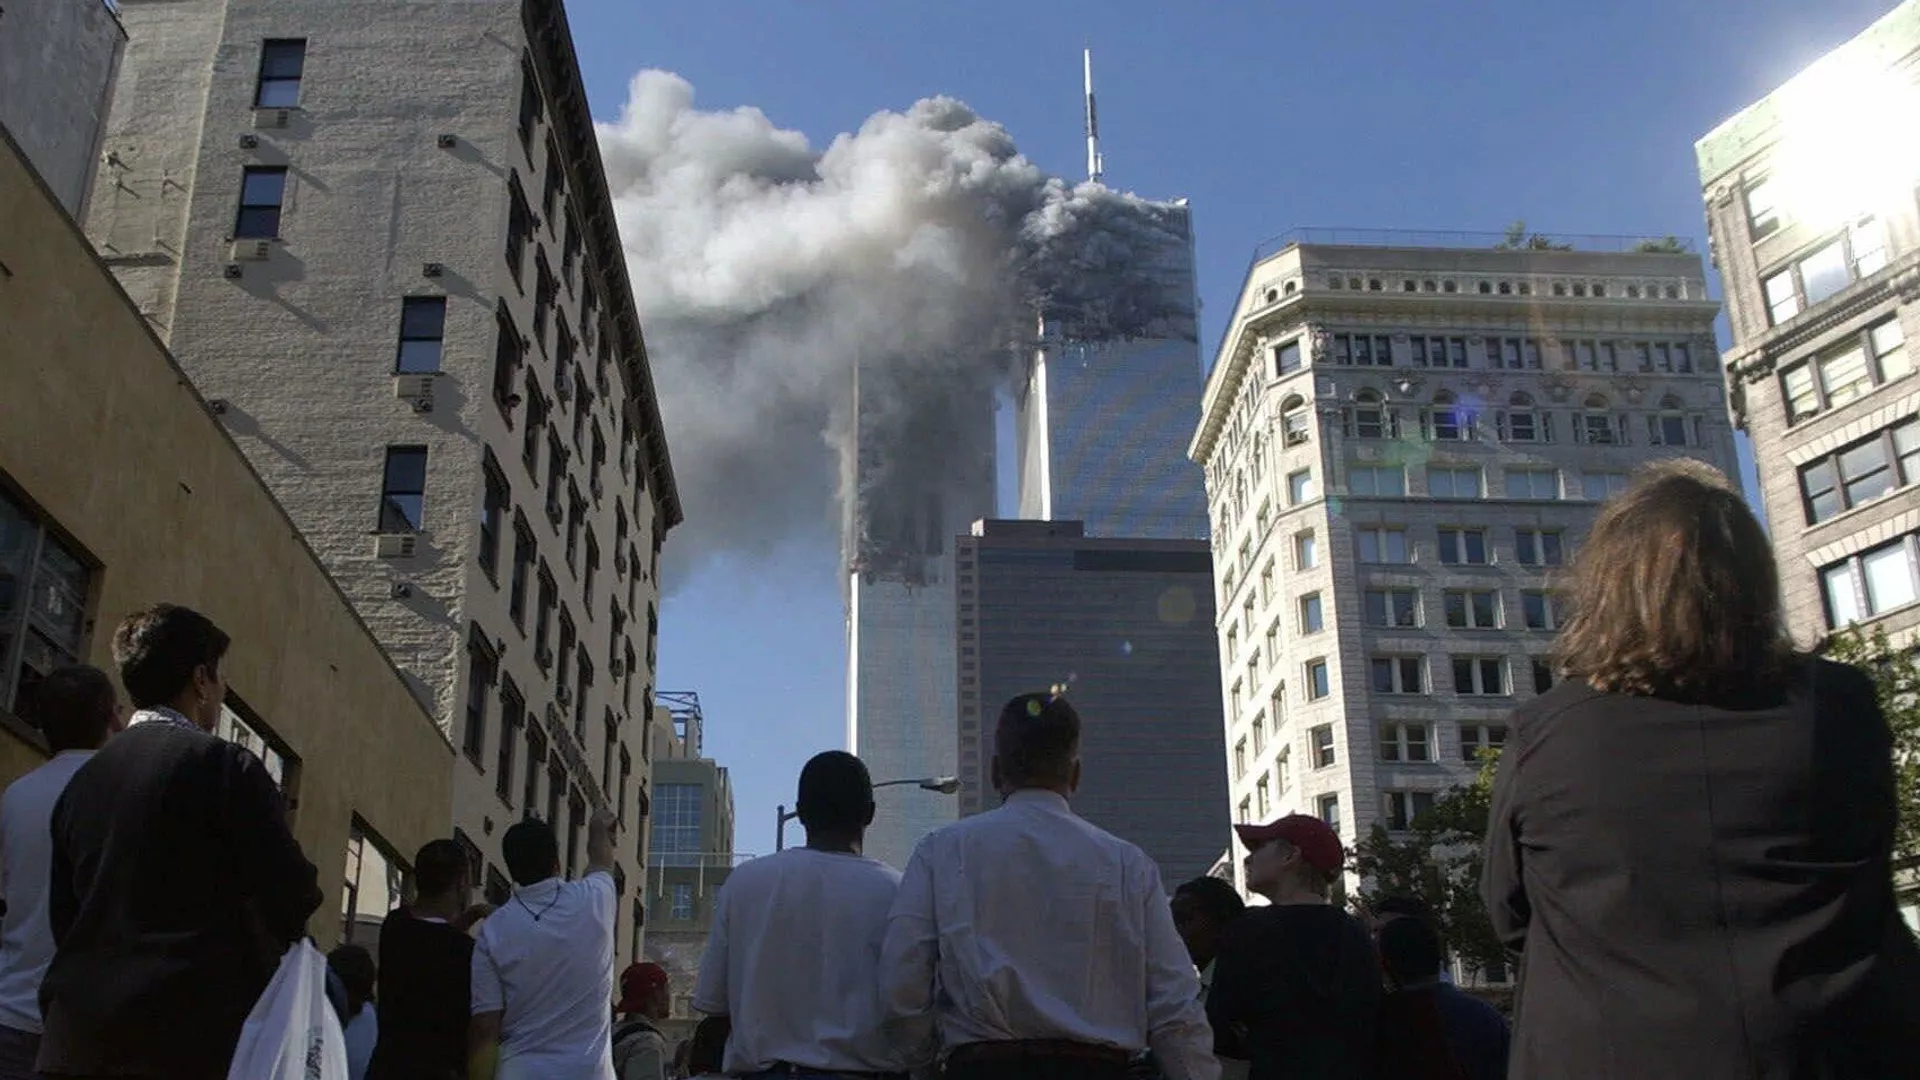 22 ноября 2001. Теракты 11 сентября 2001 года. Всемирный торговый центр в Нью-Йорке 11 сентября 2001 года. 11 Сентября 2001 башни Пентагон.